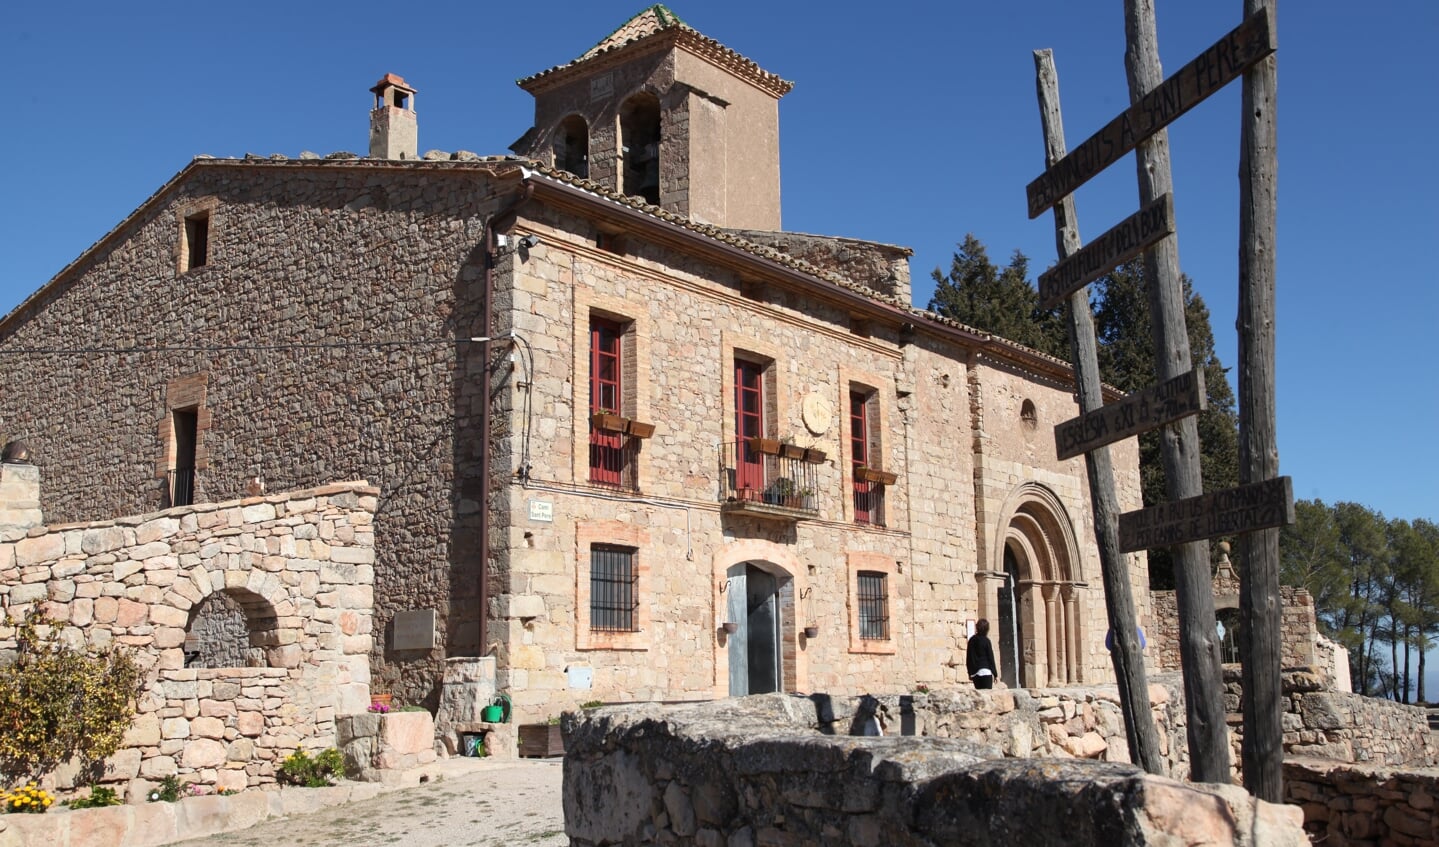 De kerk van Sant Pere in Castellfollit del Boix.